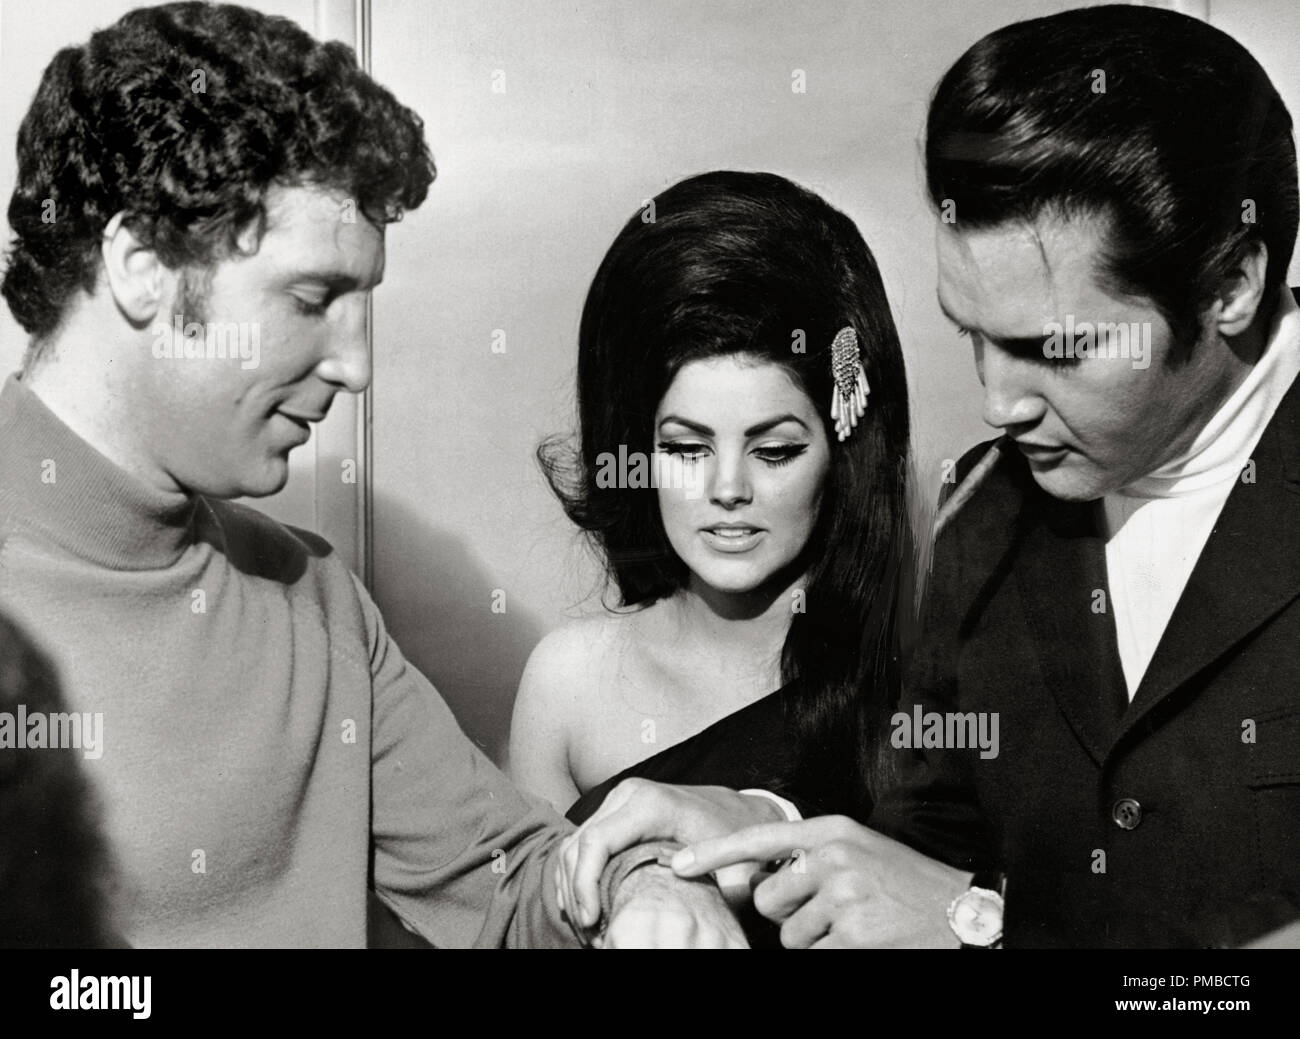 Elvis Presley Mit Seiner Frau Priscilla Presley Und Sanger Tom Jones 1967 Datei Referenz 32914 844 Tha Stockfotografie Alamy